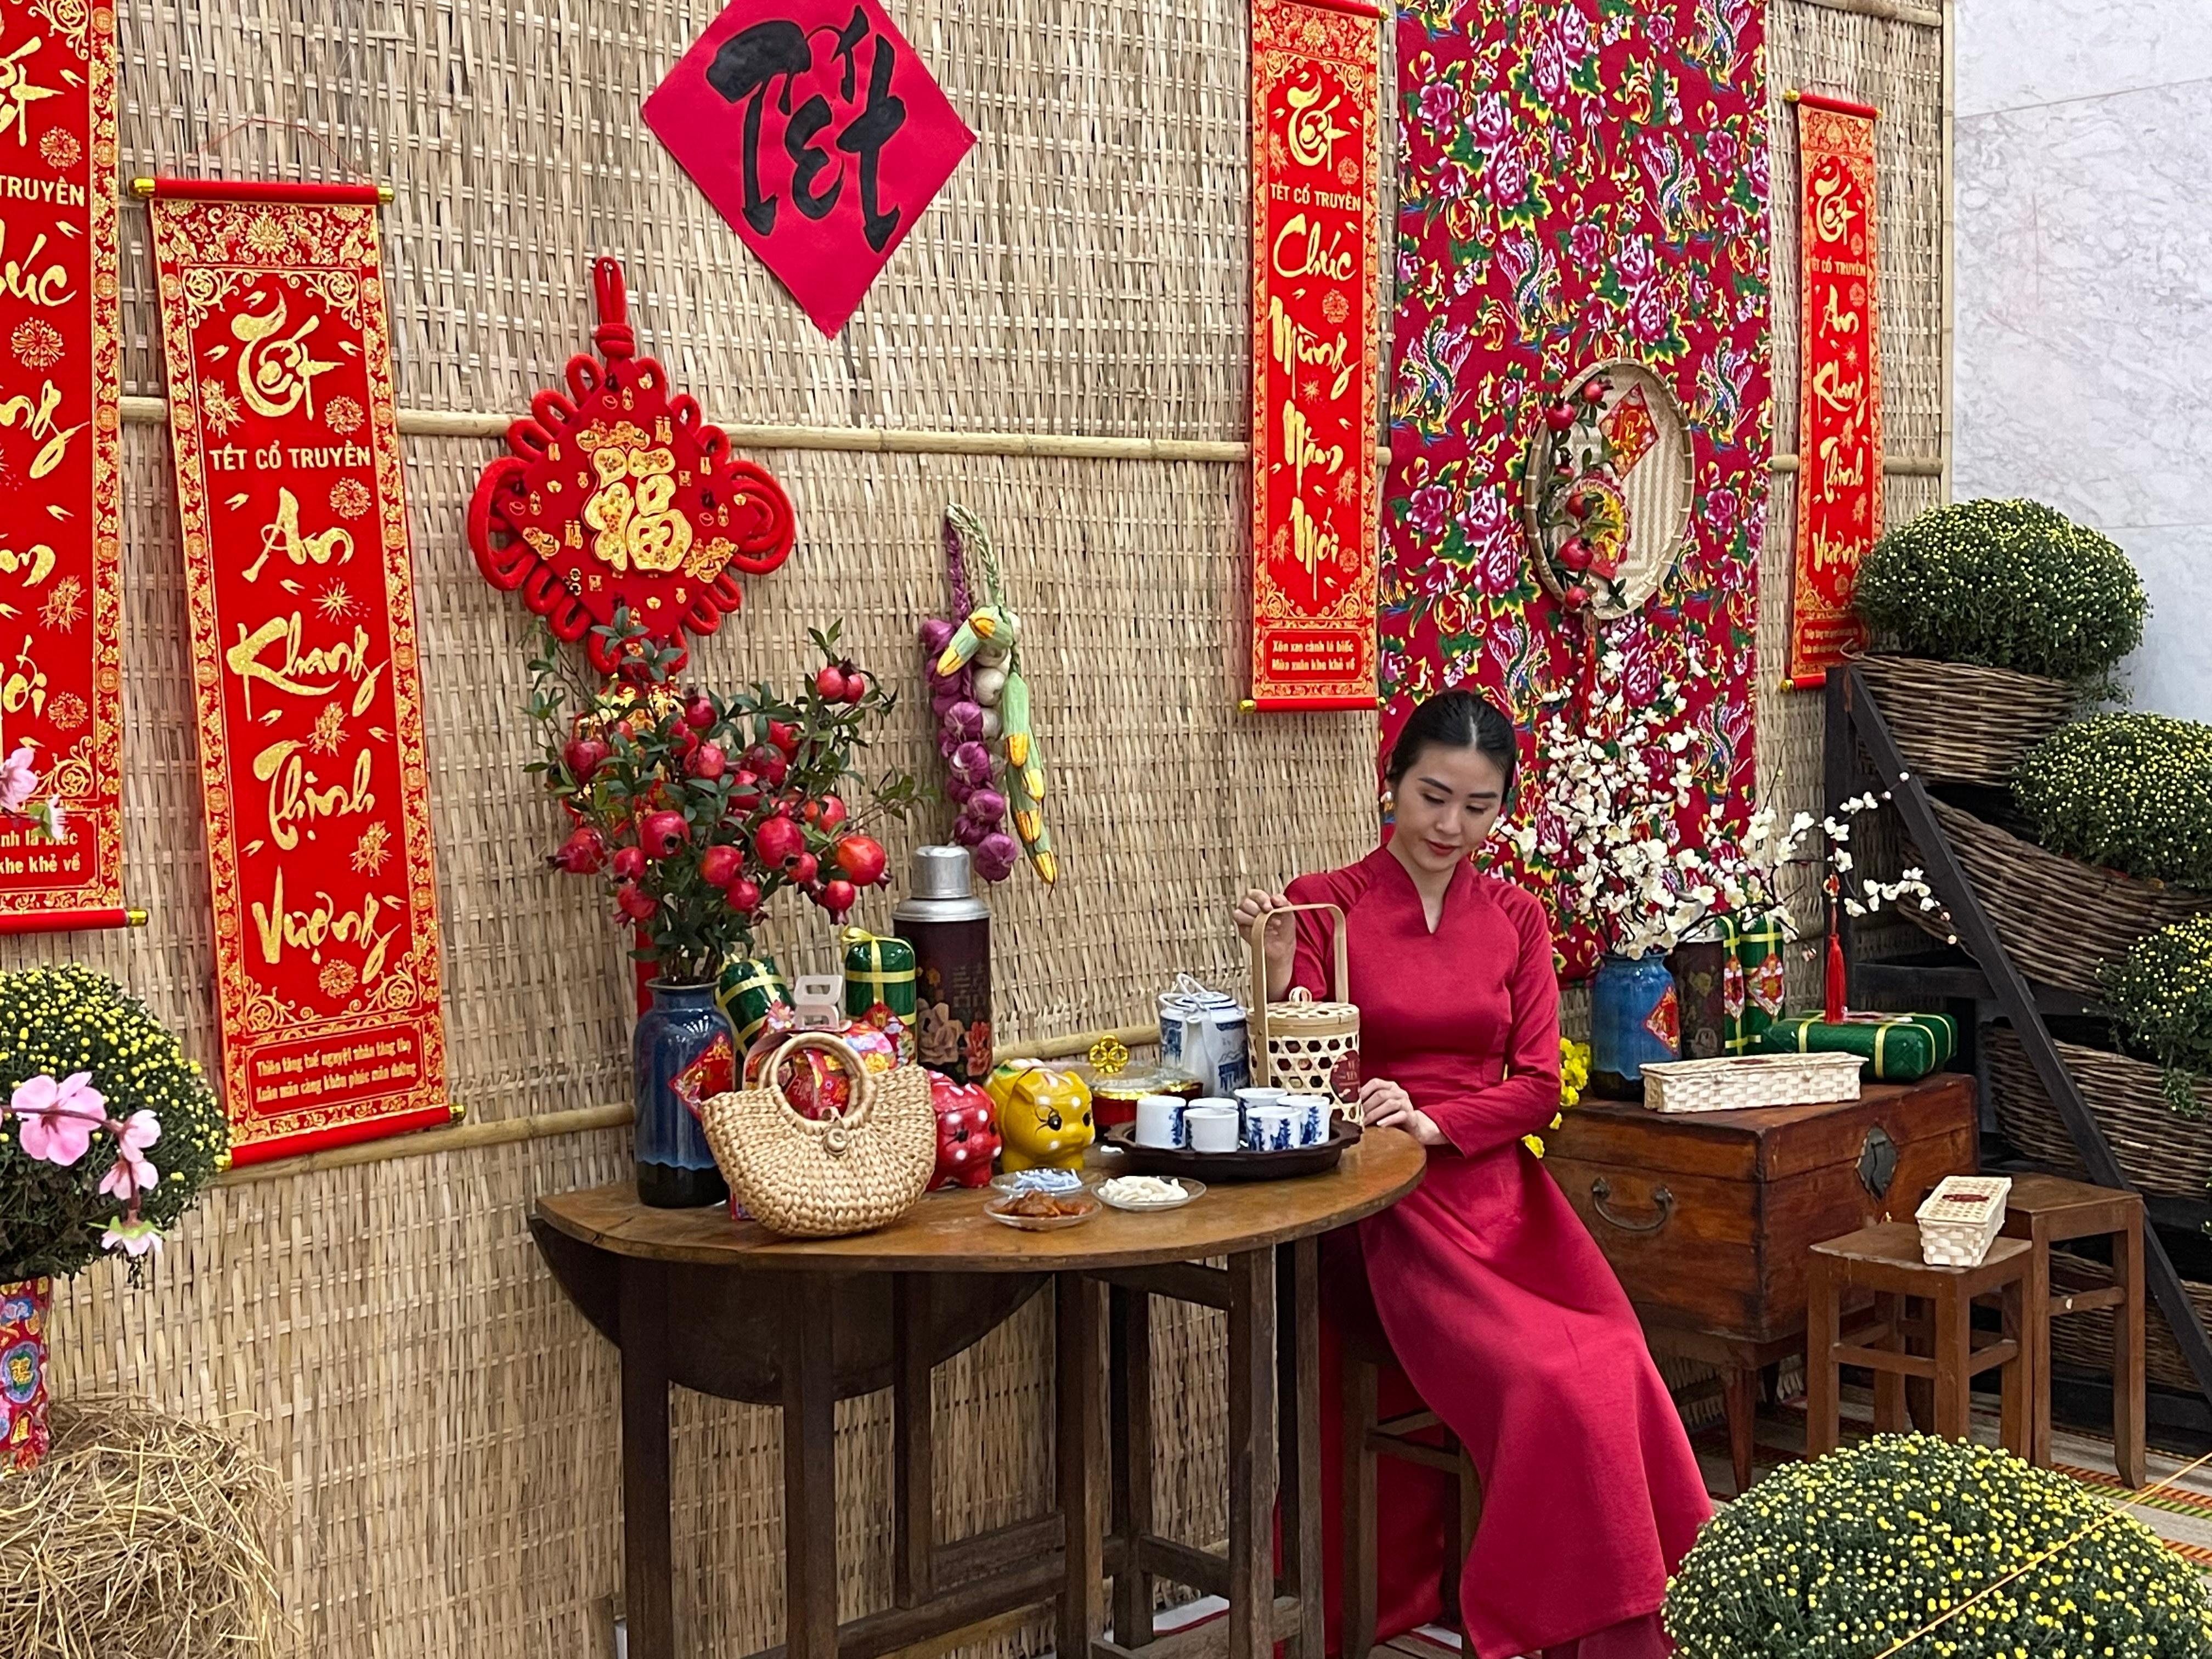 Hình tết đẹp: Nét văn hóa truyền thống đậm đà của người Việt trong những bức hình tết đẹp mắt mang lại sự ấm áp và hạnh phúc đong đầy. Khám phá những bức hình tết đẹp nhất trên hình ảnh này để cảm nhận sự hoan hỷ của mùa xuân.